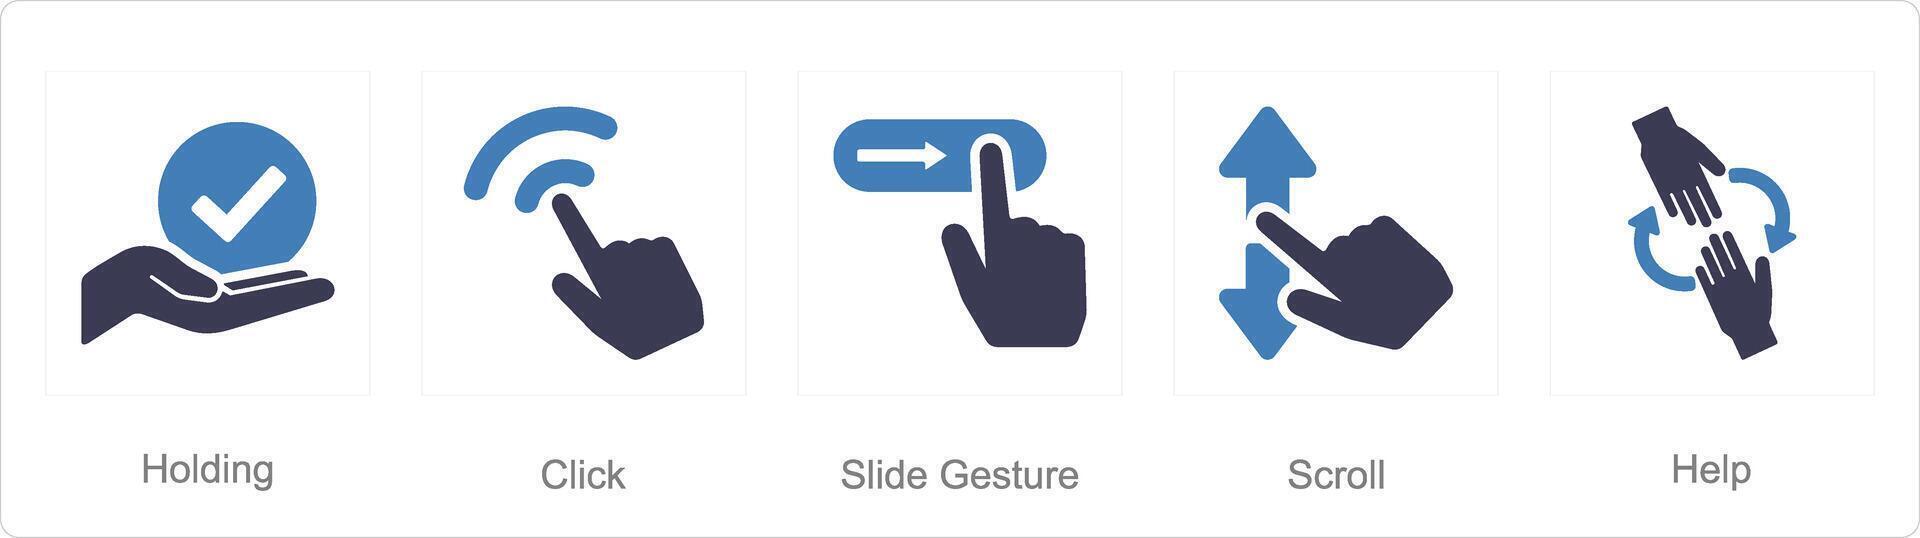 un conjunto de 5 5 manos íconos como tenencia, hacer clic, diapositiva gesto vector